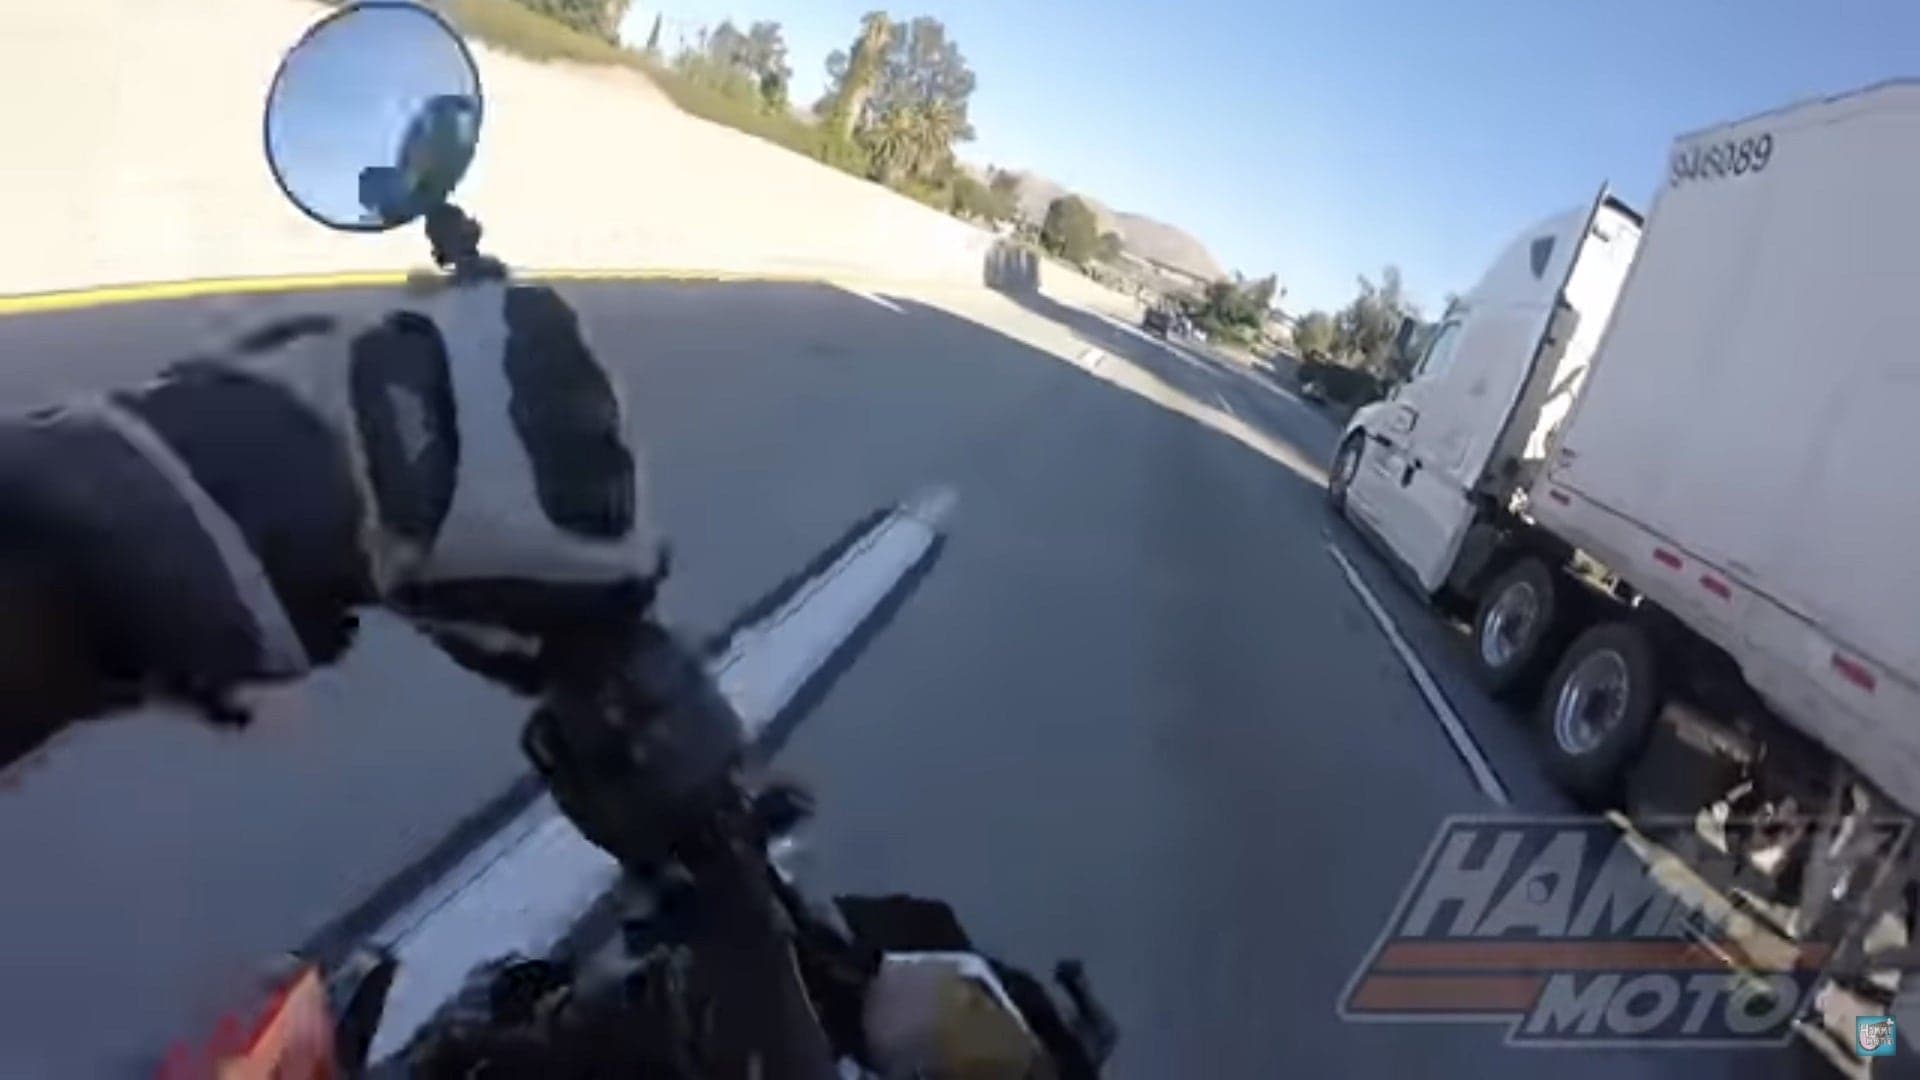 Watch This Biker Narrowly Avoid Becoming a Human Pancake Under a Truck